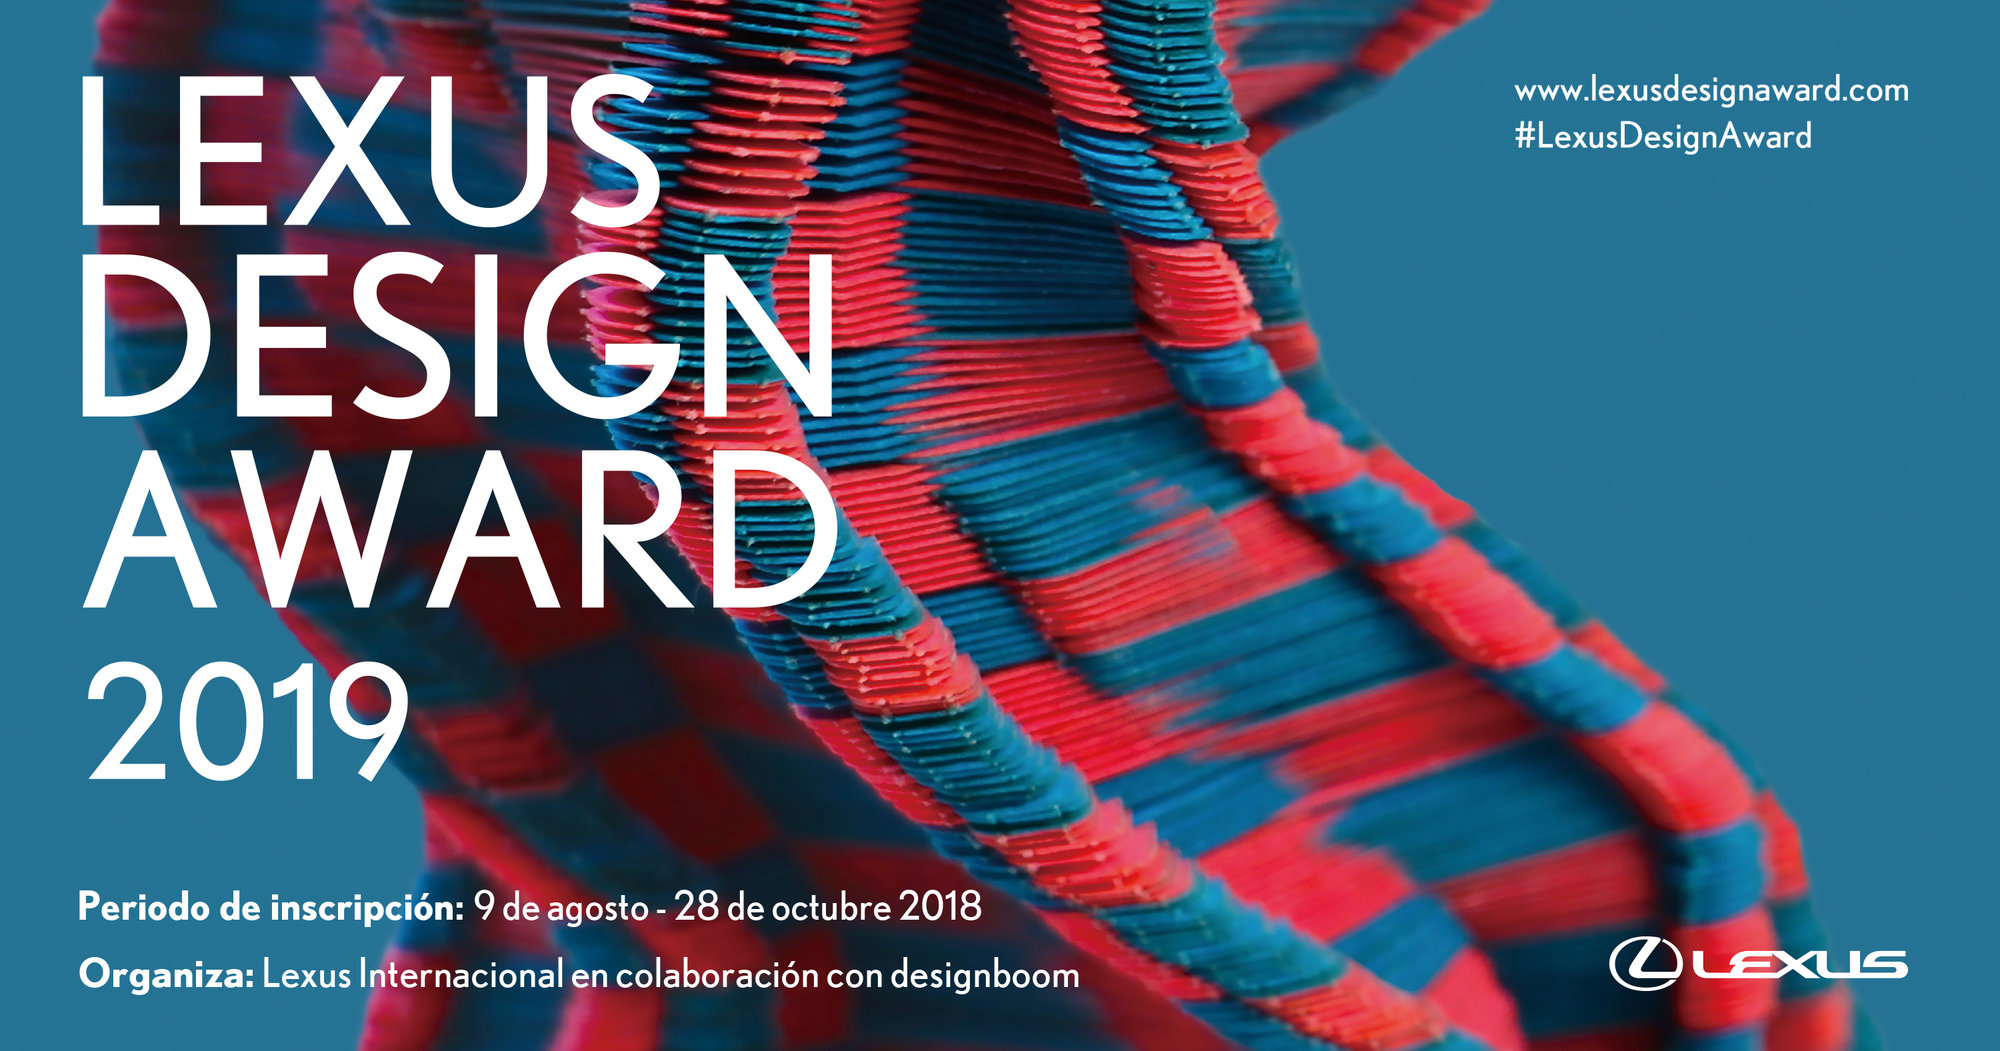 Lexus Design Award 2019: Los aspirantes se enfrentarán al reto de diseñar un futuro mejor